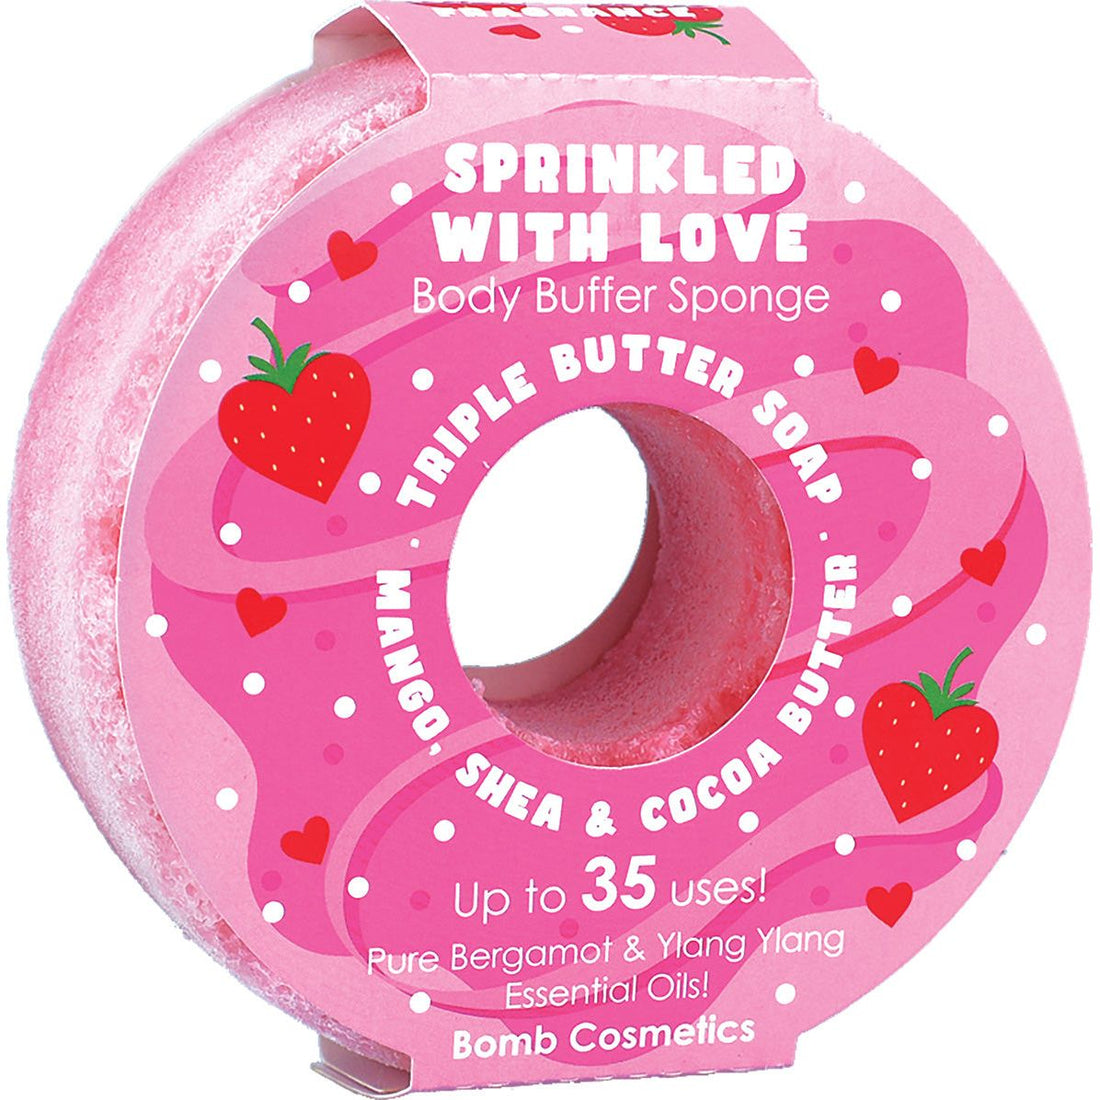 Sprinkled with Love Donut Body Buffer Sponge